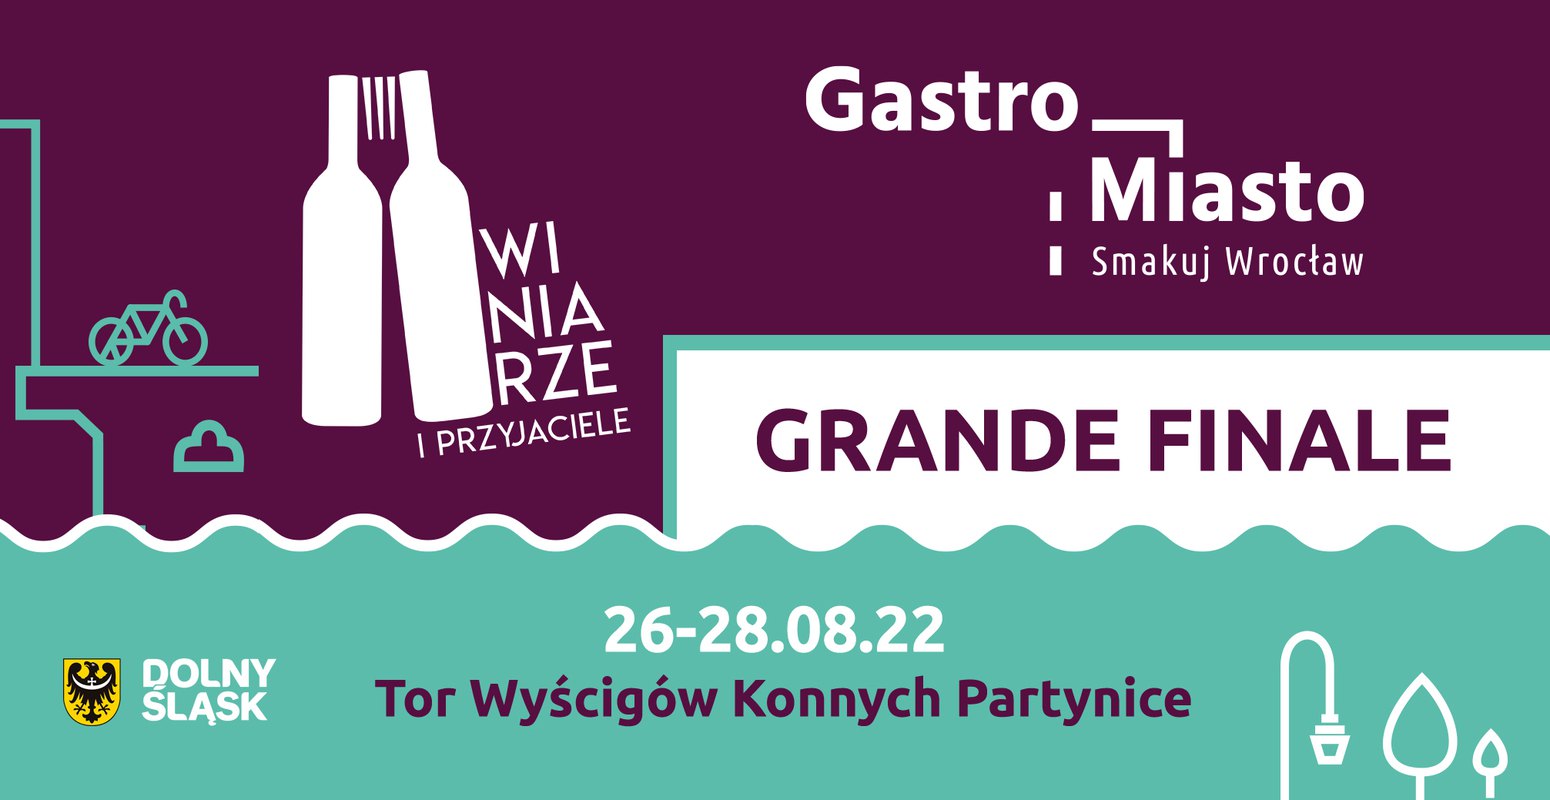 Winiarze i Gastro Miasto - Grande Finale